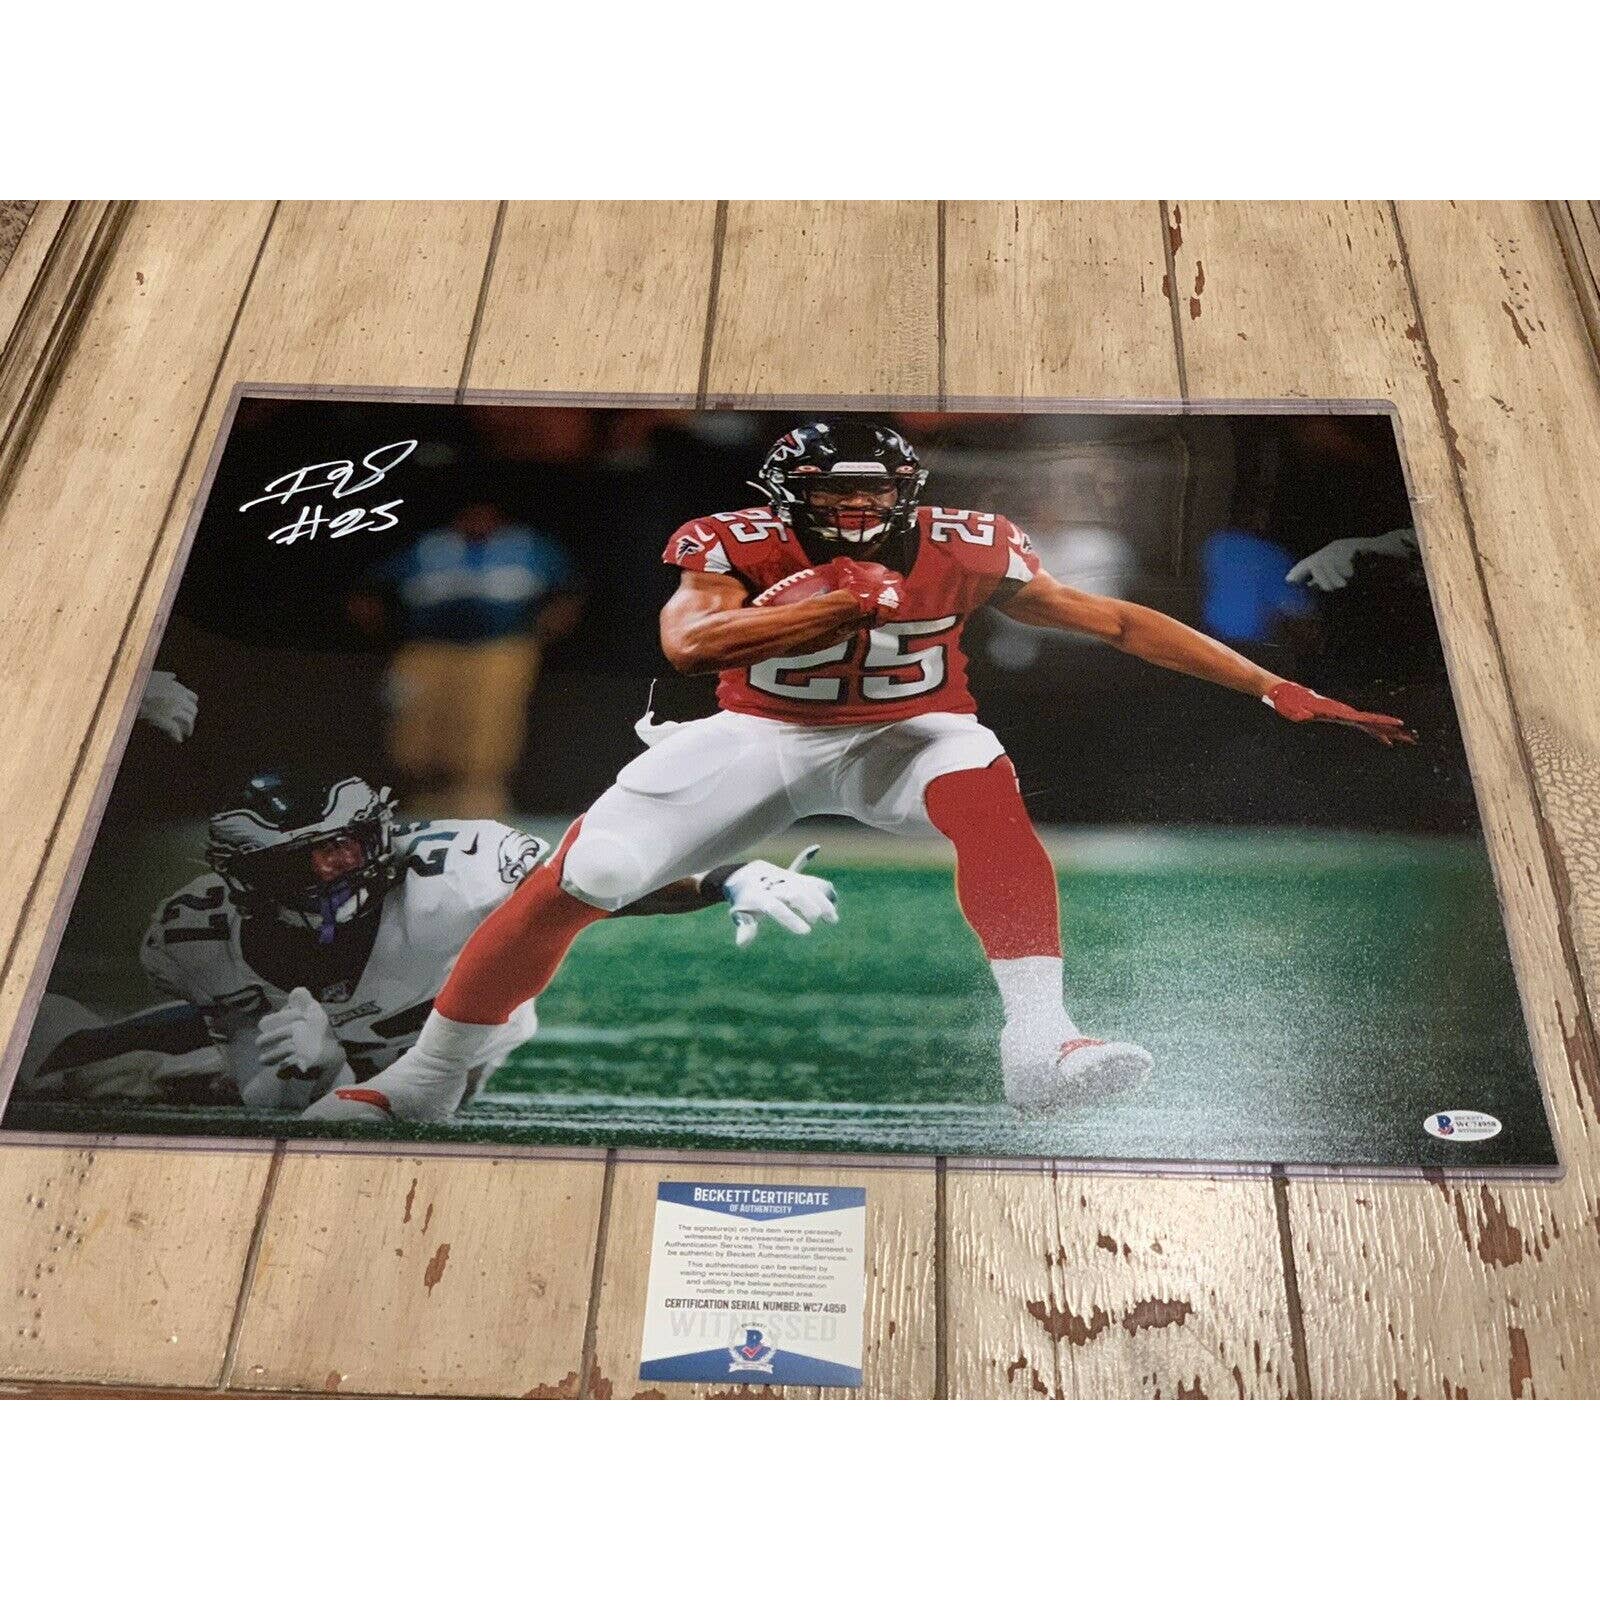 Ito Smith Autographed/Signed 16x20 Photo Beckett COA Atlanta Falcons - TreasuresEvolved